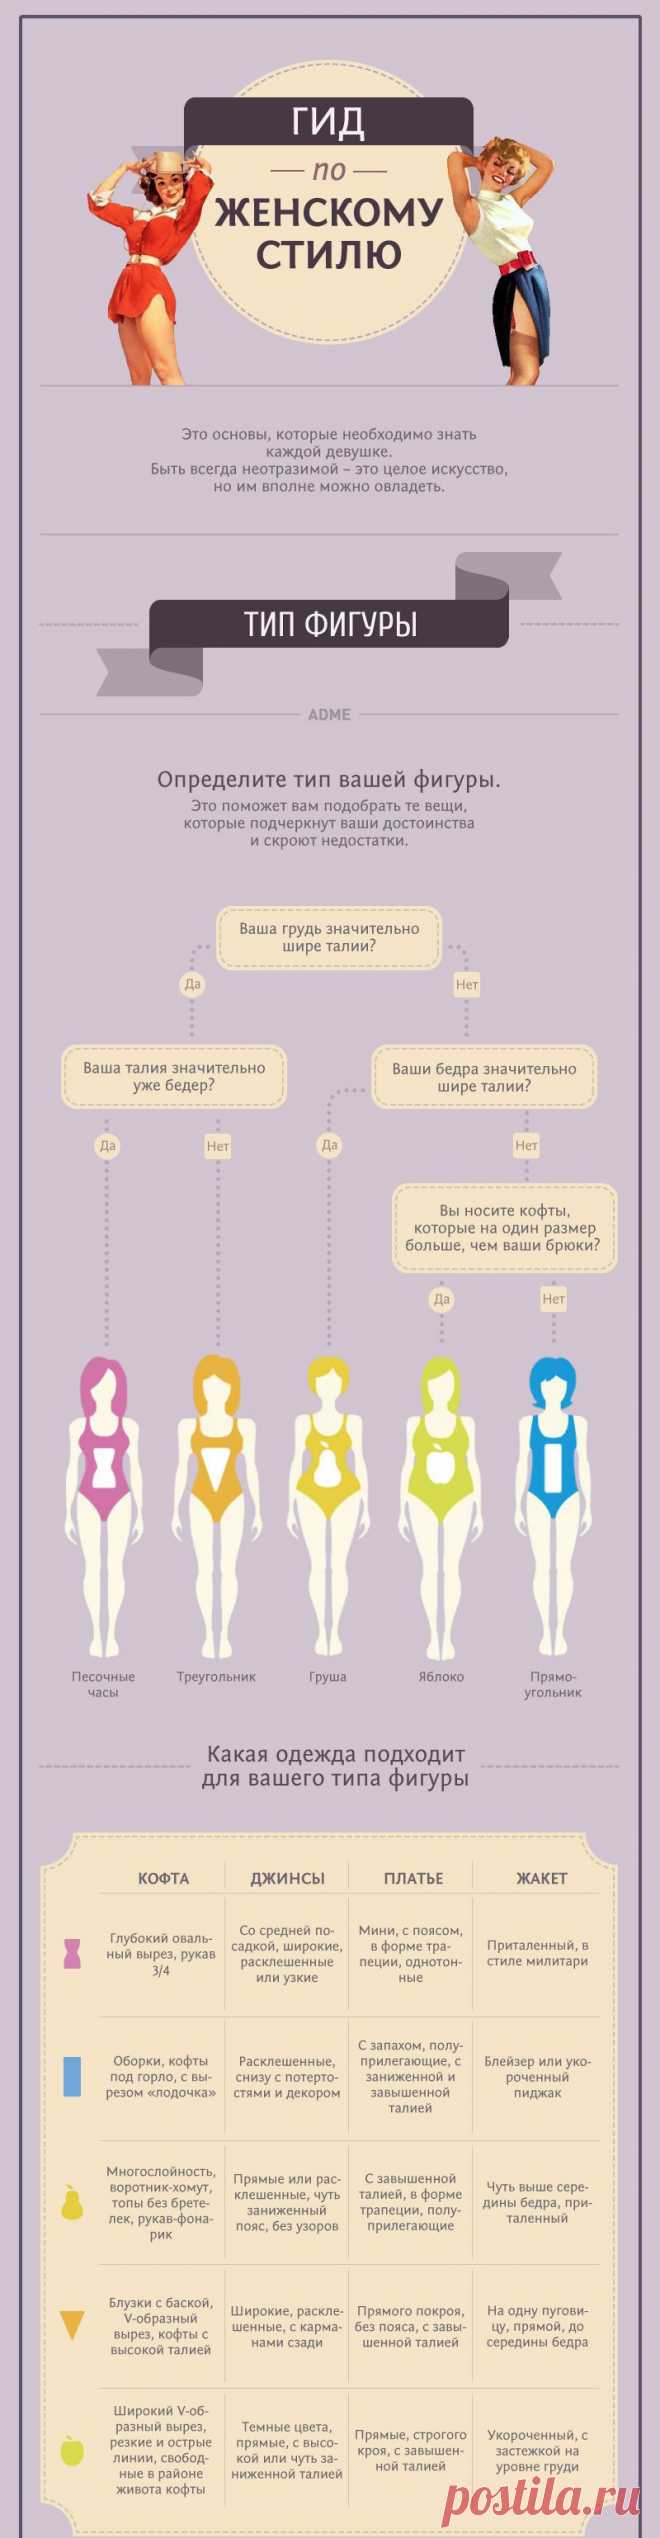 Инфографика в маркетинге
Самый полный гид по женскому стилю
AdMe.ru собрал в этой инфографике 25 самых дельных советов для девушек, которые хотят всегда выглядеть на отлично. Читайте, запоминайте и действуйте.